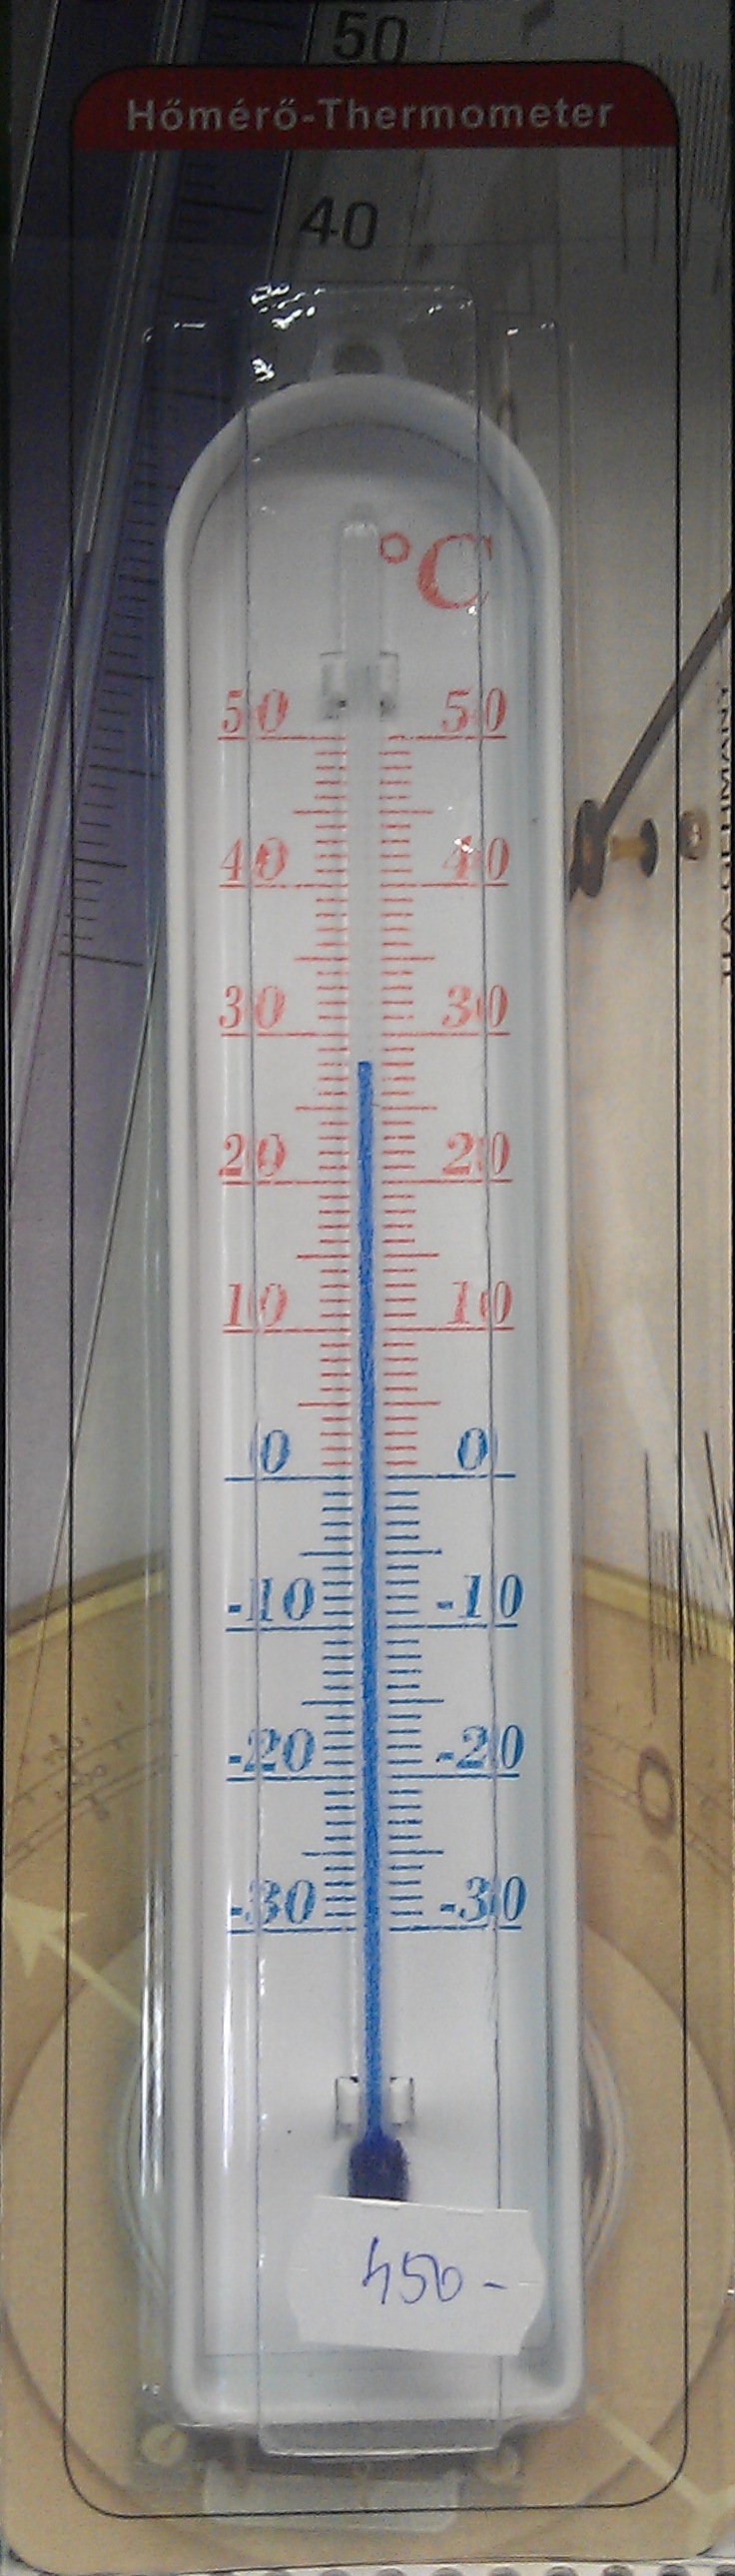 Hőmérő - kültéri -30 °C - 50 °C - Kattintson a képre a bezáráshoz!